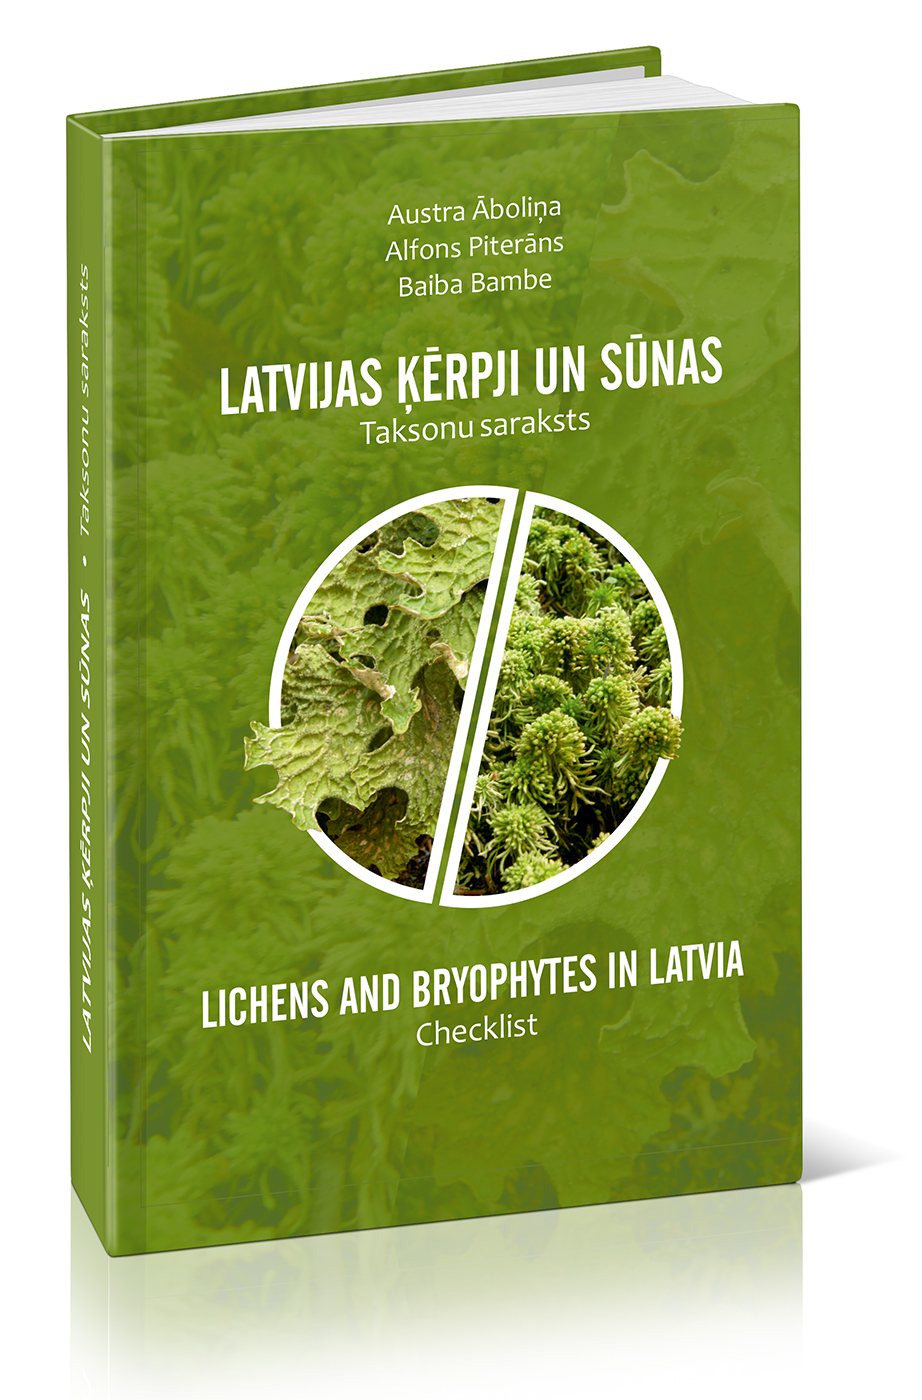 2015 Monografija Latvijas kerpji un sunas Taksonu saraksts vaks